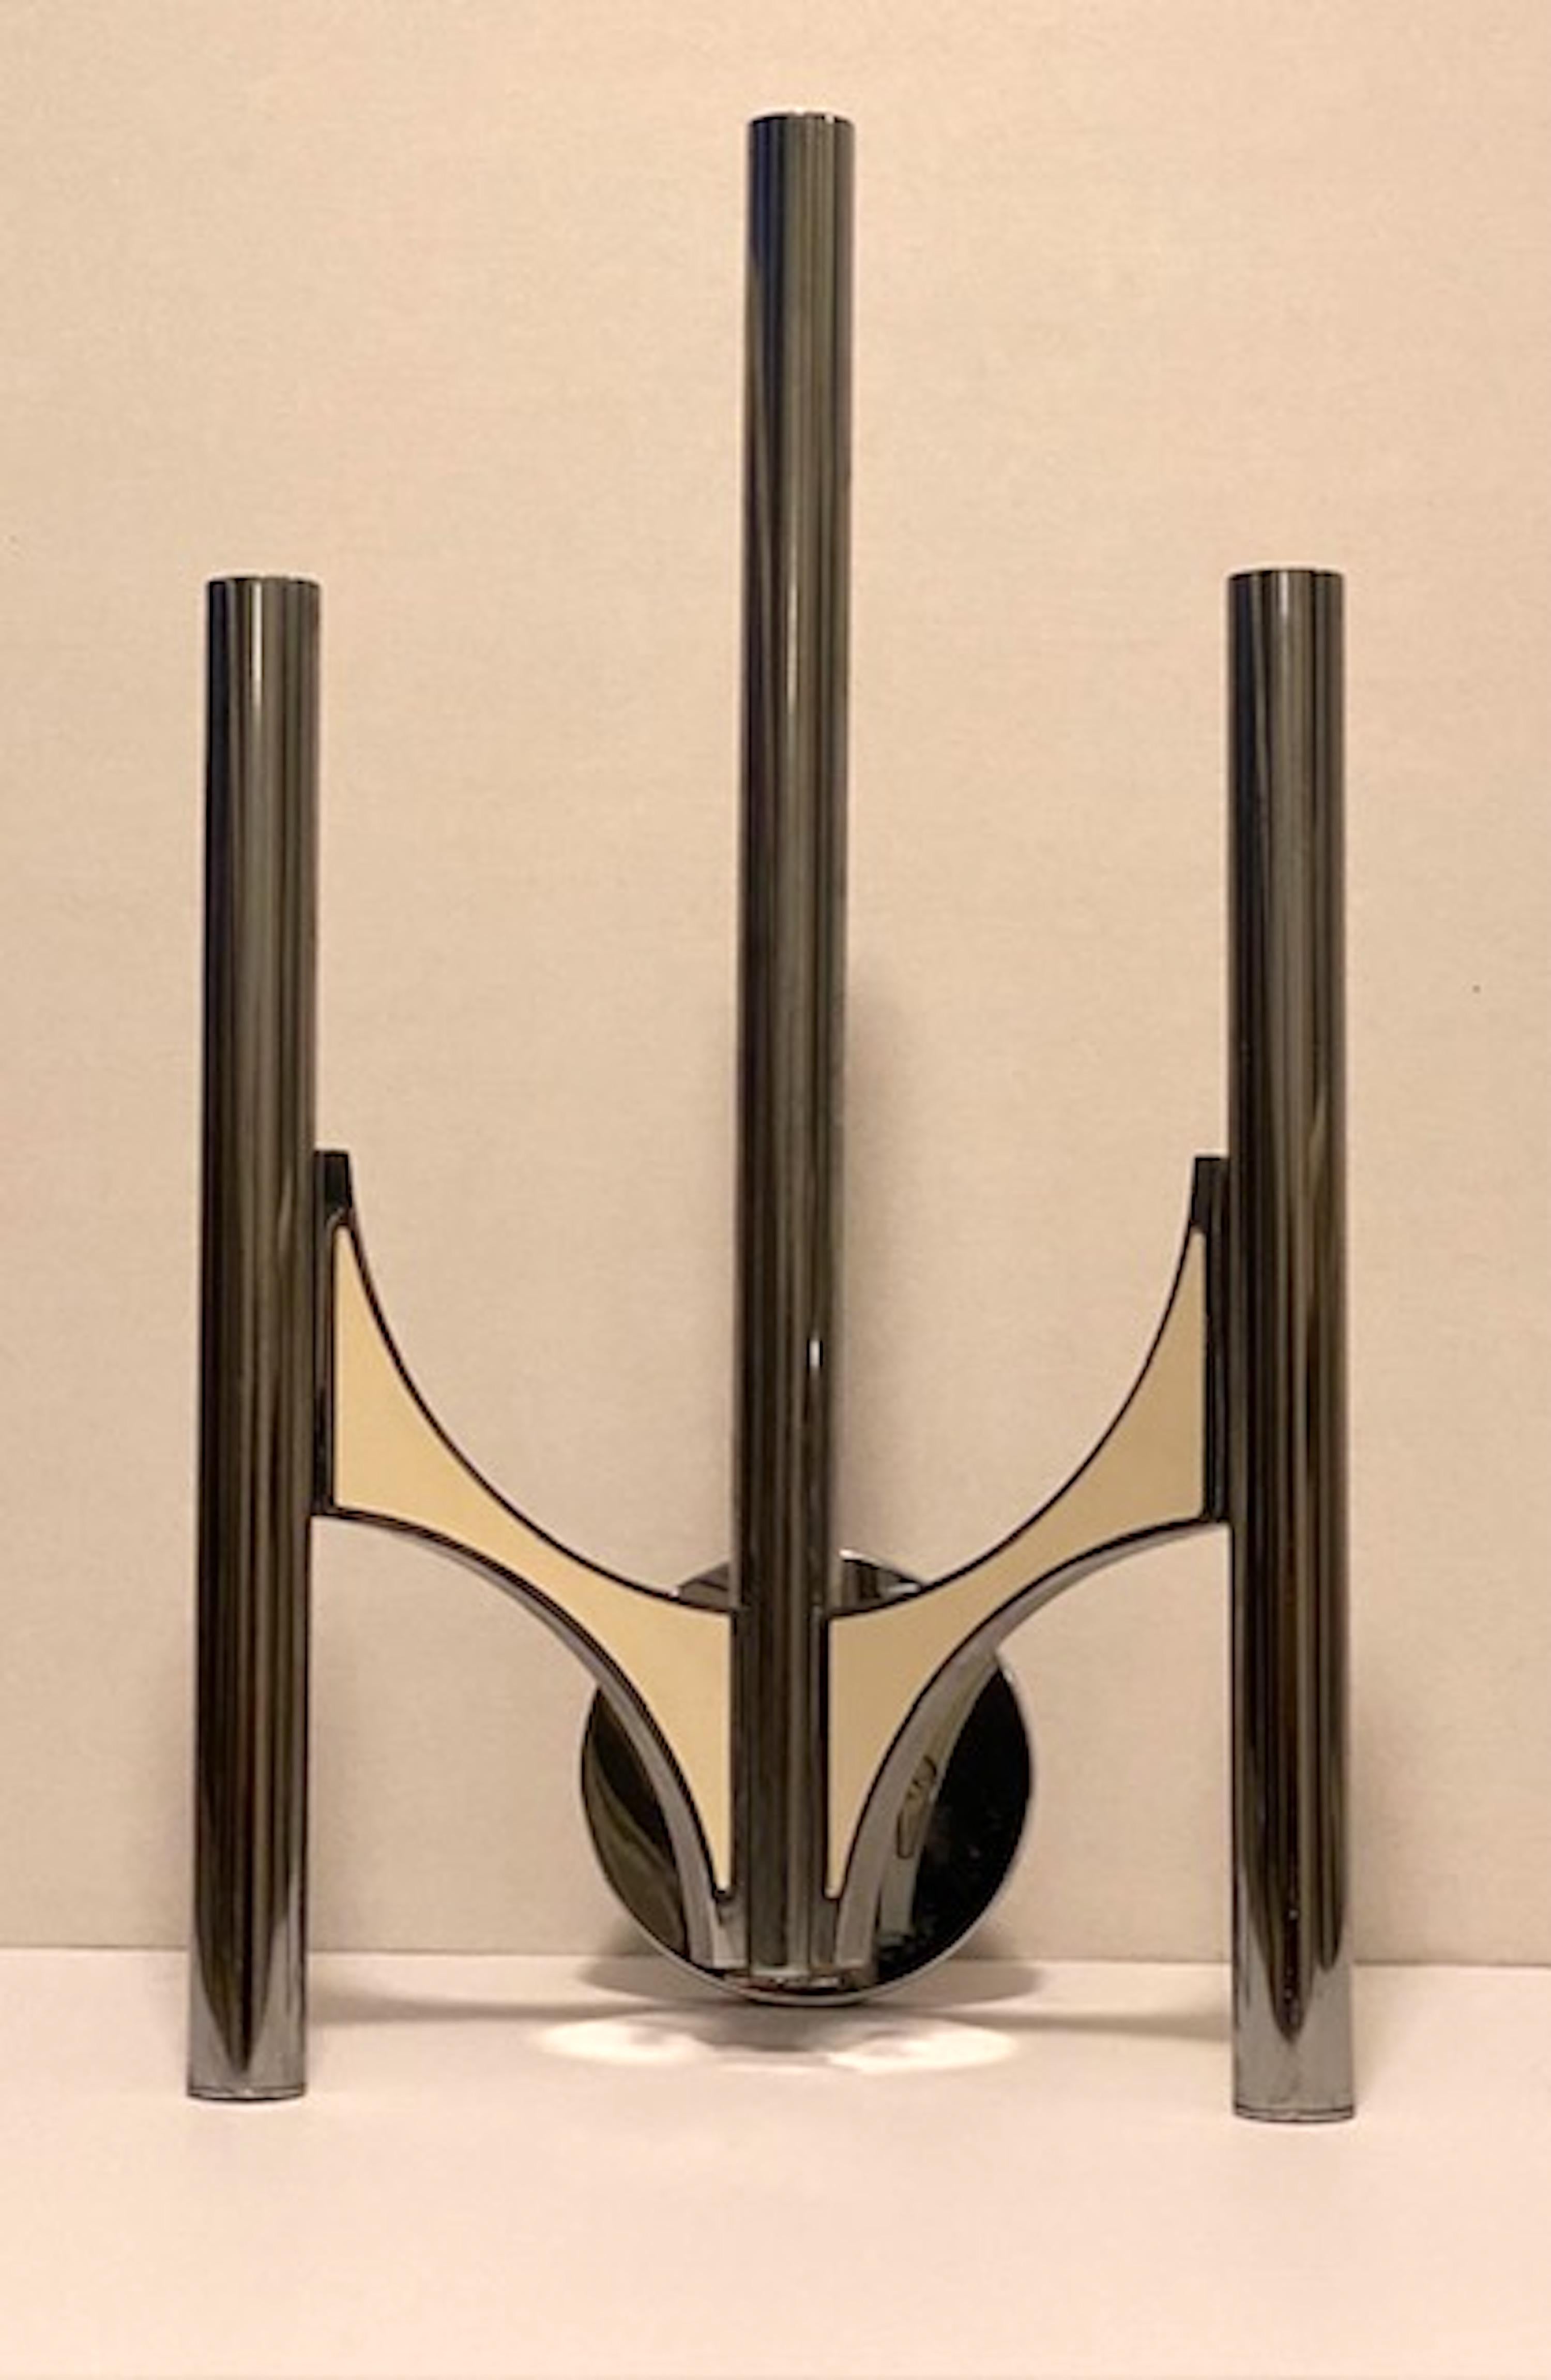 Interessanter dreiarmiger Wandleuchter von Gaetano Sciolari,  jedes Rohr enthält eine  Kandelaberglühbirne und Metallplatten an den Armen. Die emaillierten Metallplatten halten sich gegenseitig mit Magneten.
Der originale Sciolari-Aufkleber ist noch